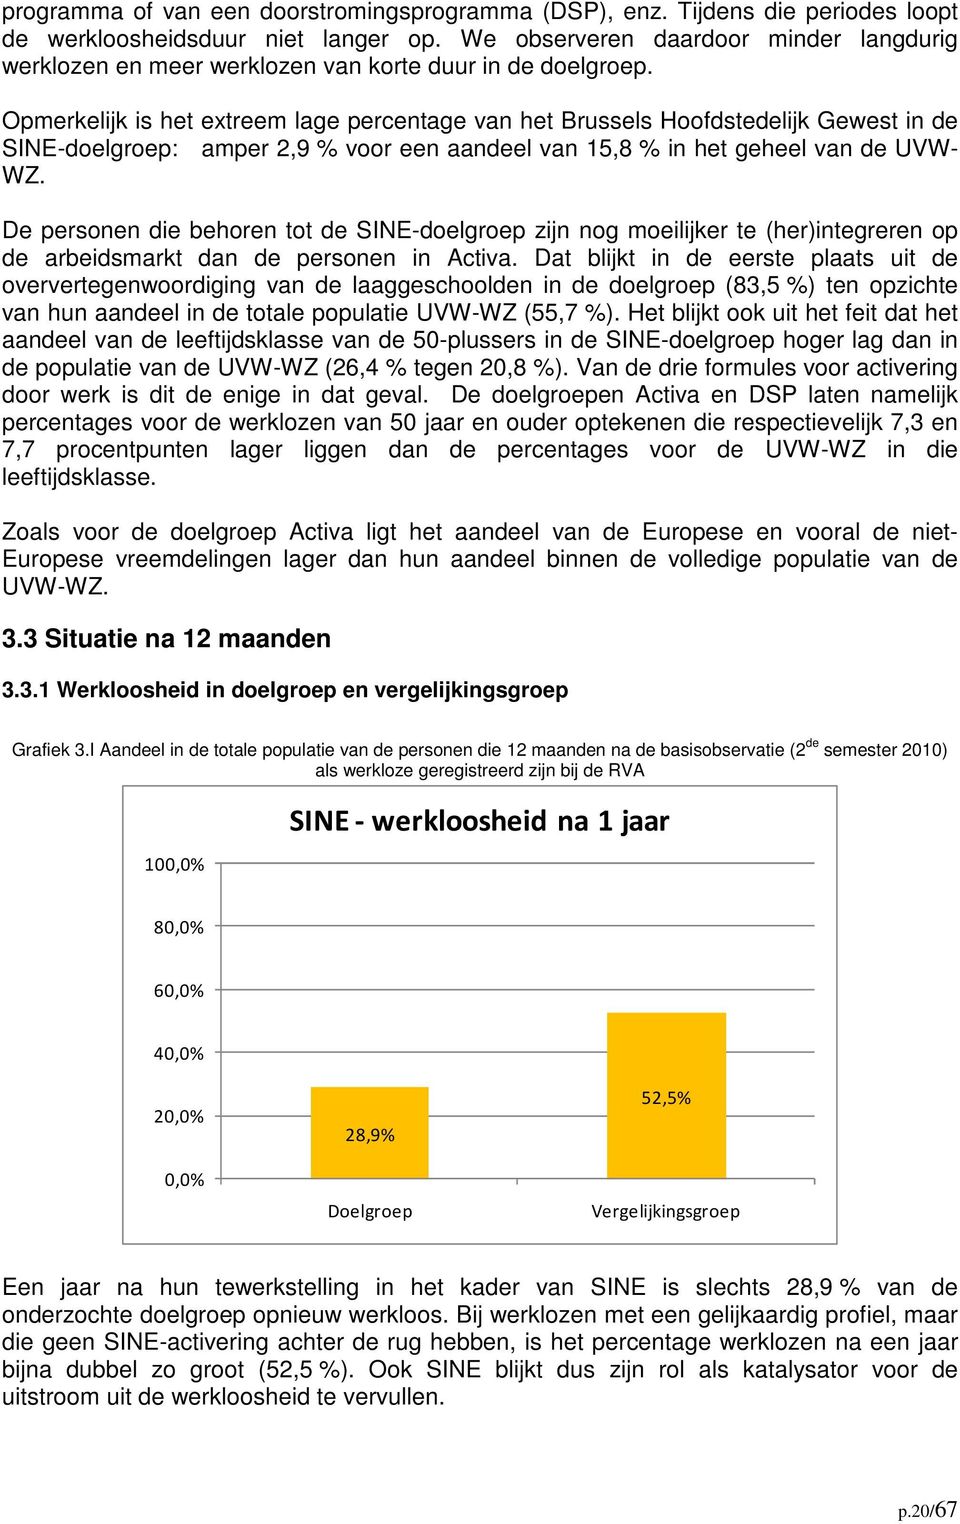 Opmerkelijk is het extreem lage percentage van het Brussels Hoofdstedelijk Gewest in de SINE-doelgroep: amper 2,9 % voor een aandeel van 15,8 % in het geheel van de UVW- WZ.